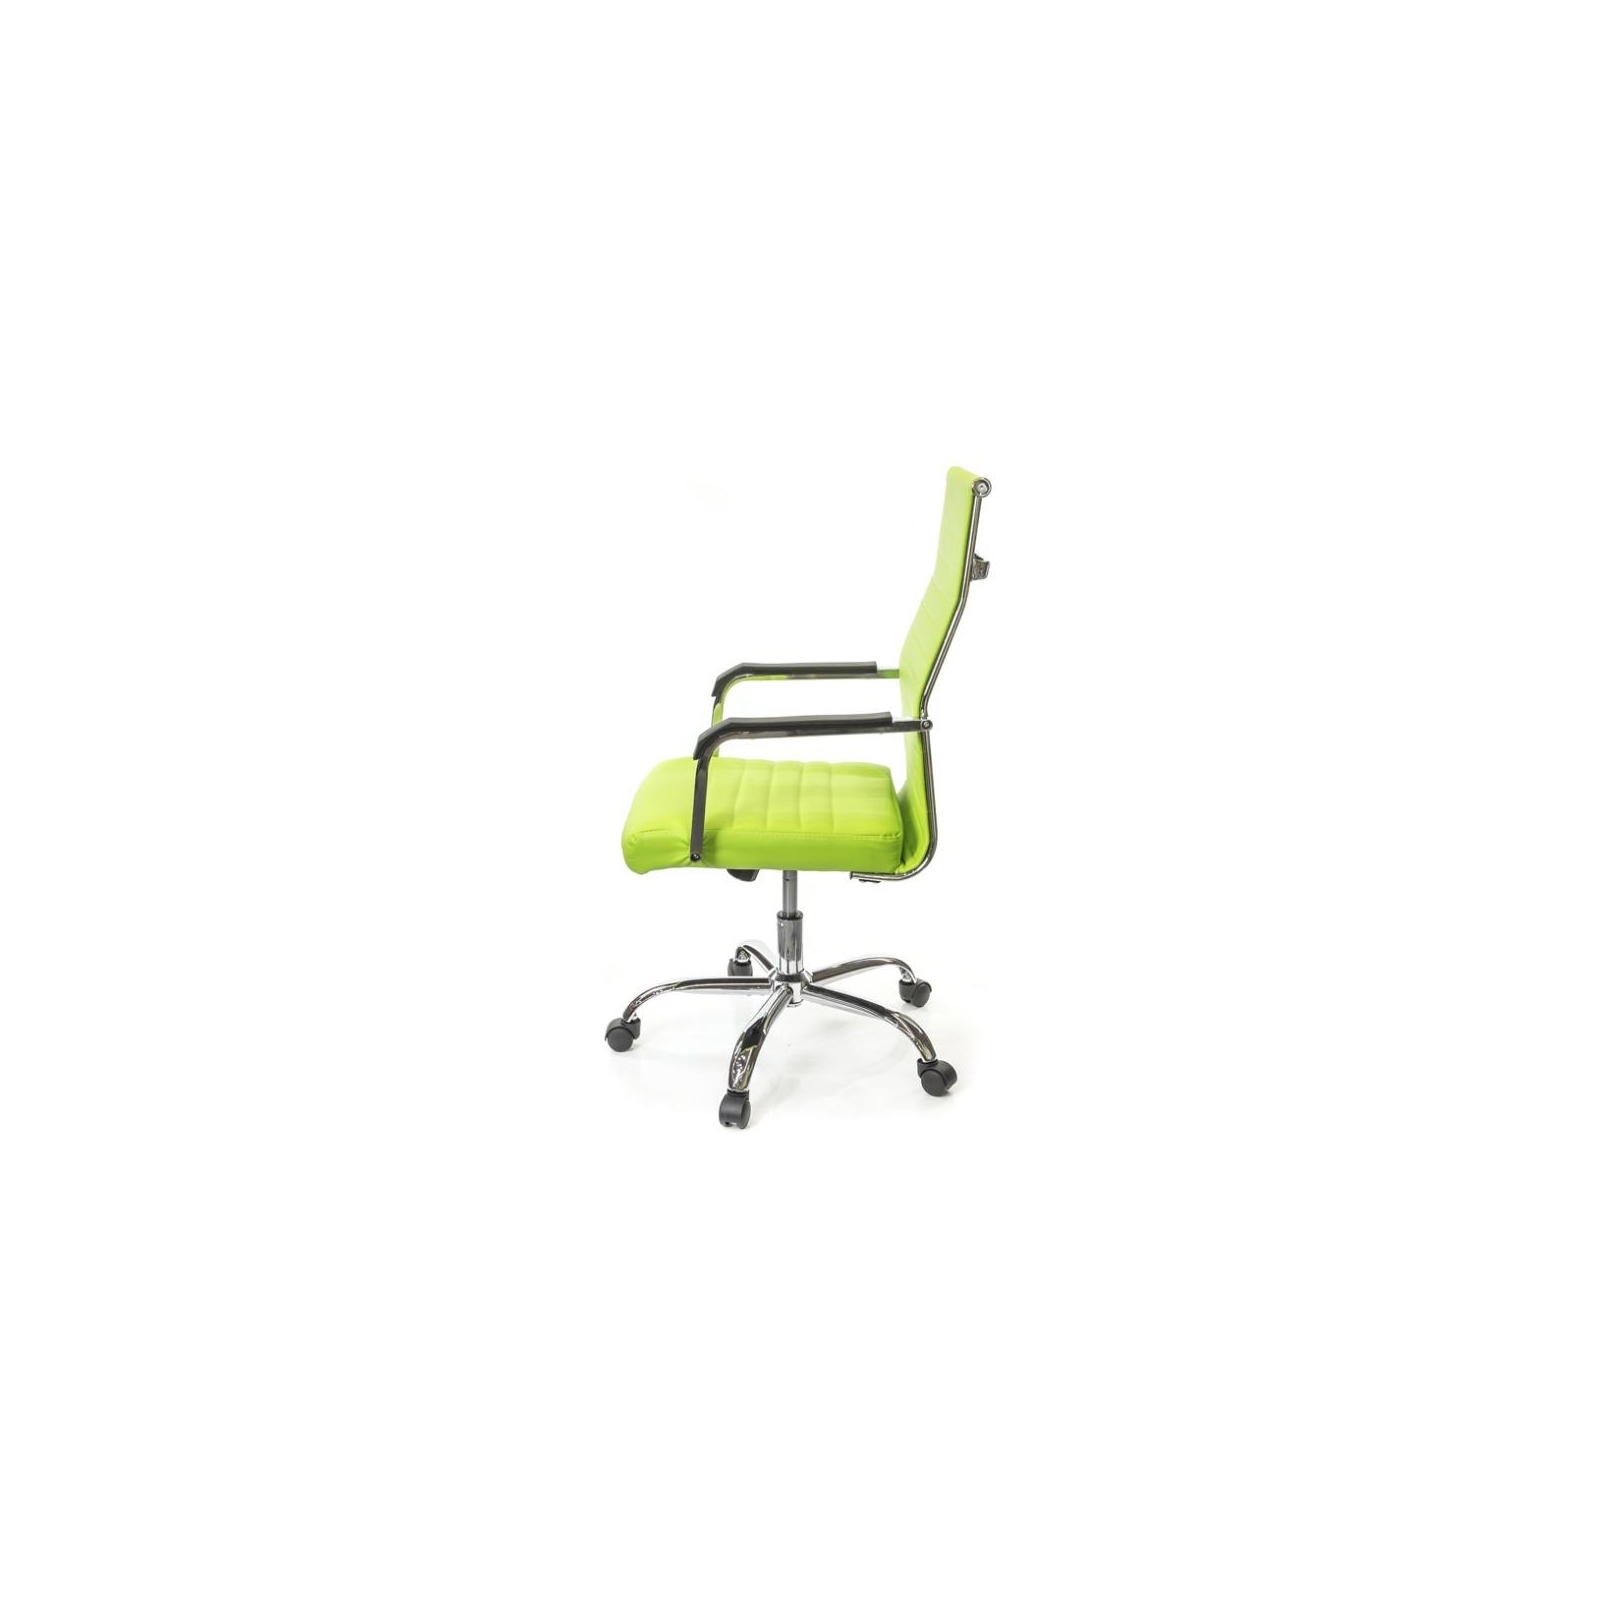 Офисное кресло Аклас Кап FX СН TILT Оранжевое (09905) изображение 3